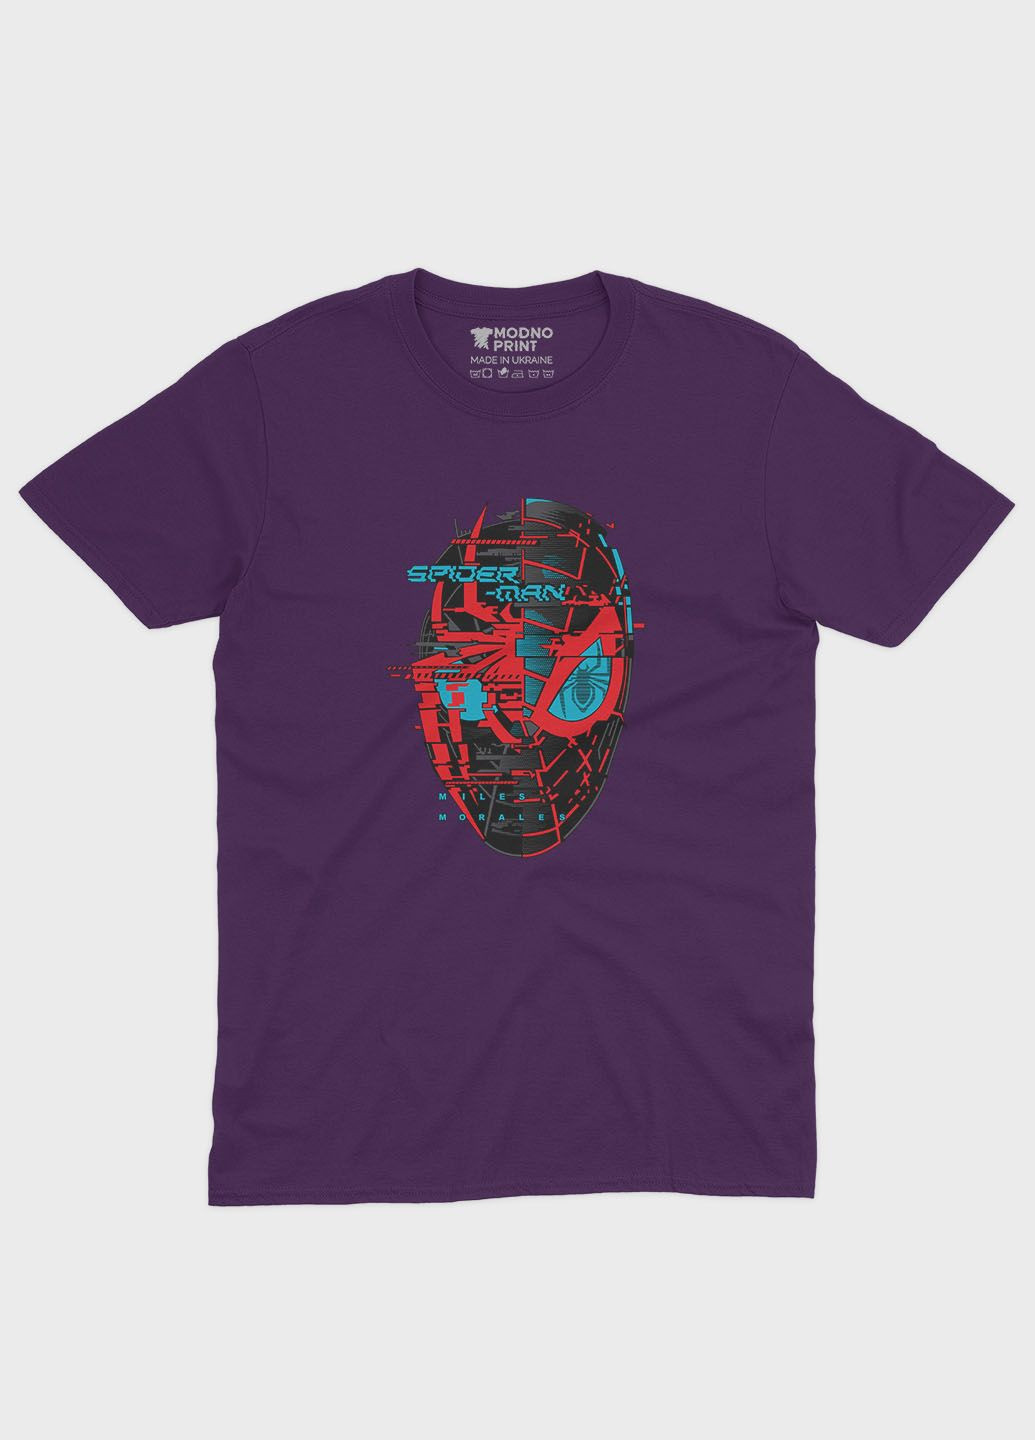 Фиолетовая демисезонная футболка для девочки с принтом супергероя - человек-паук (ts001-1-dby-006-014-034-g) Modno